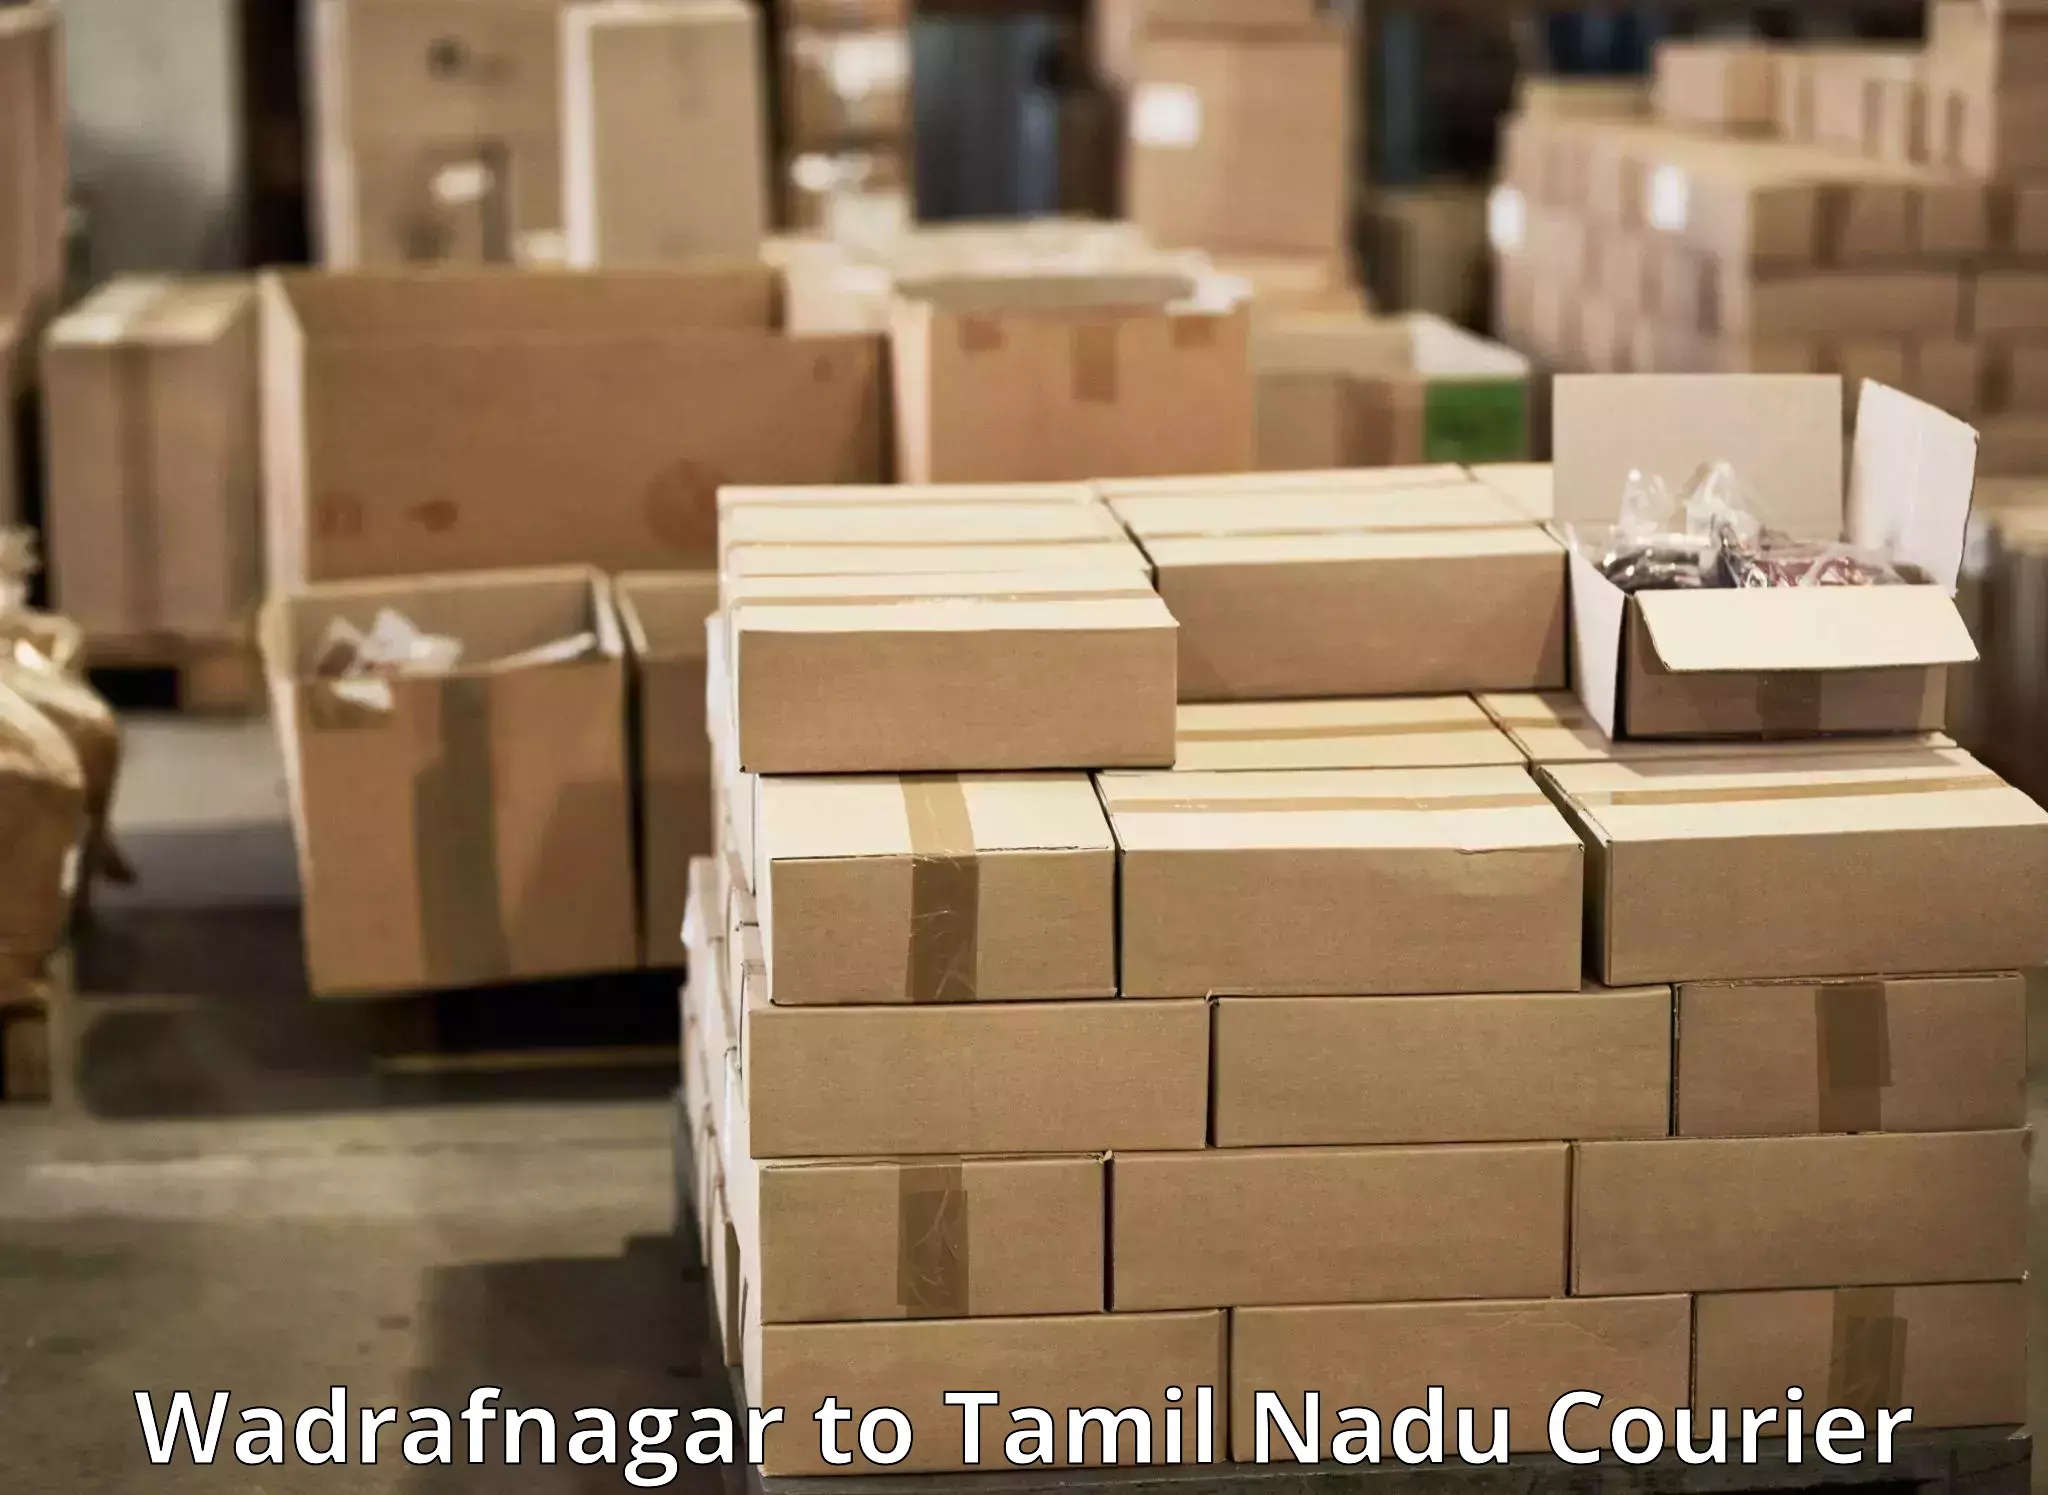 Comprehensive delivery network Wadrafnagar to Thirukoilure